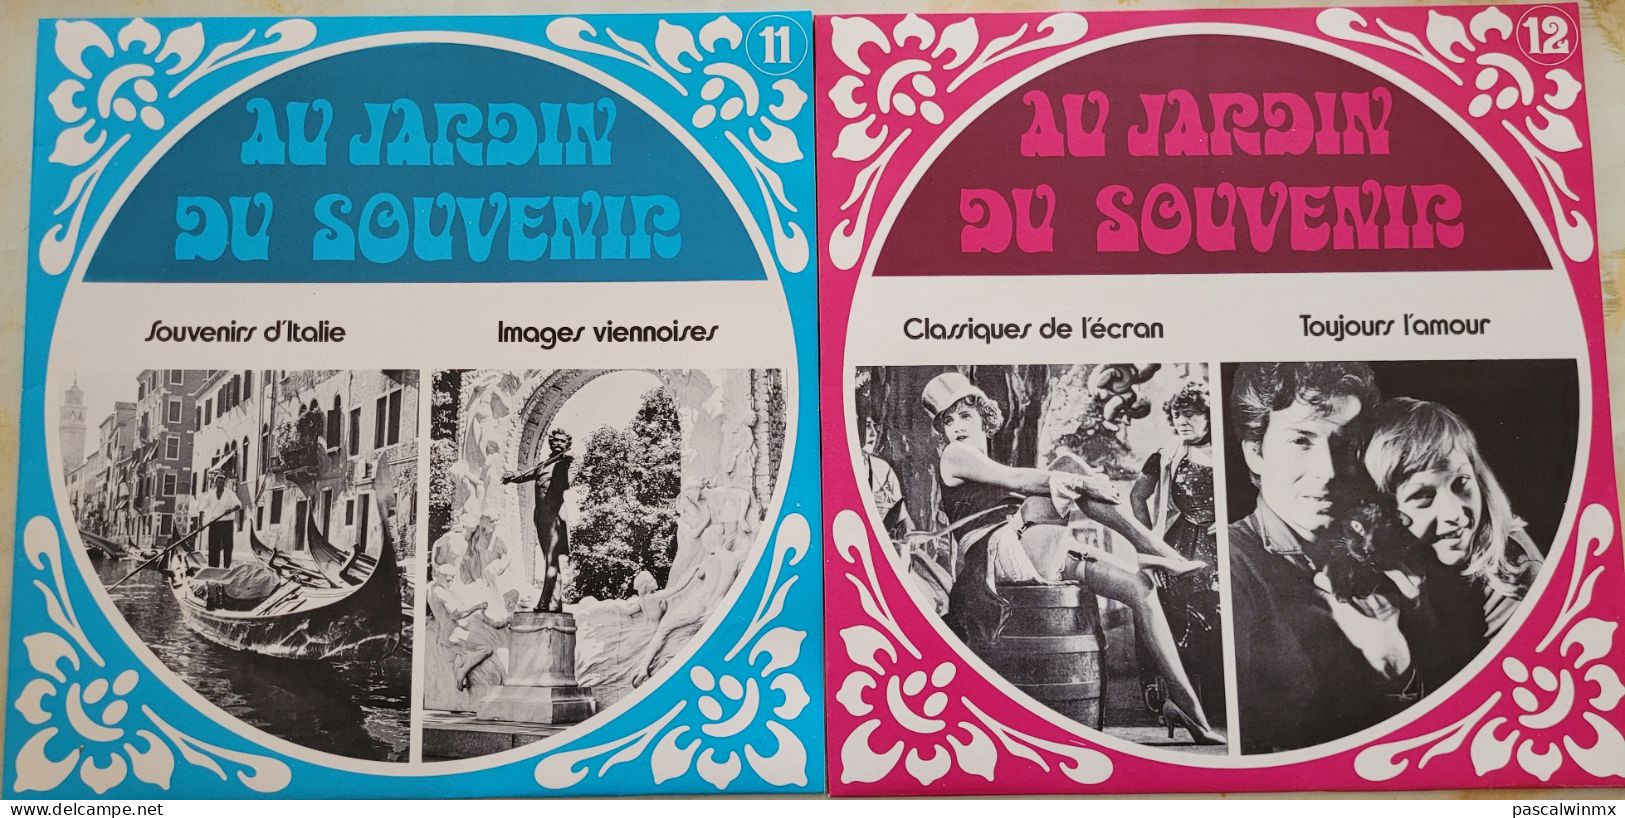 coffret de 12 disques vinyl 33 Tours Au Jardin du Souvenir